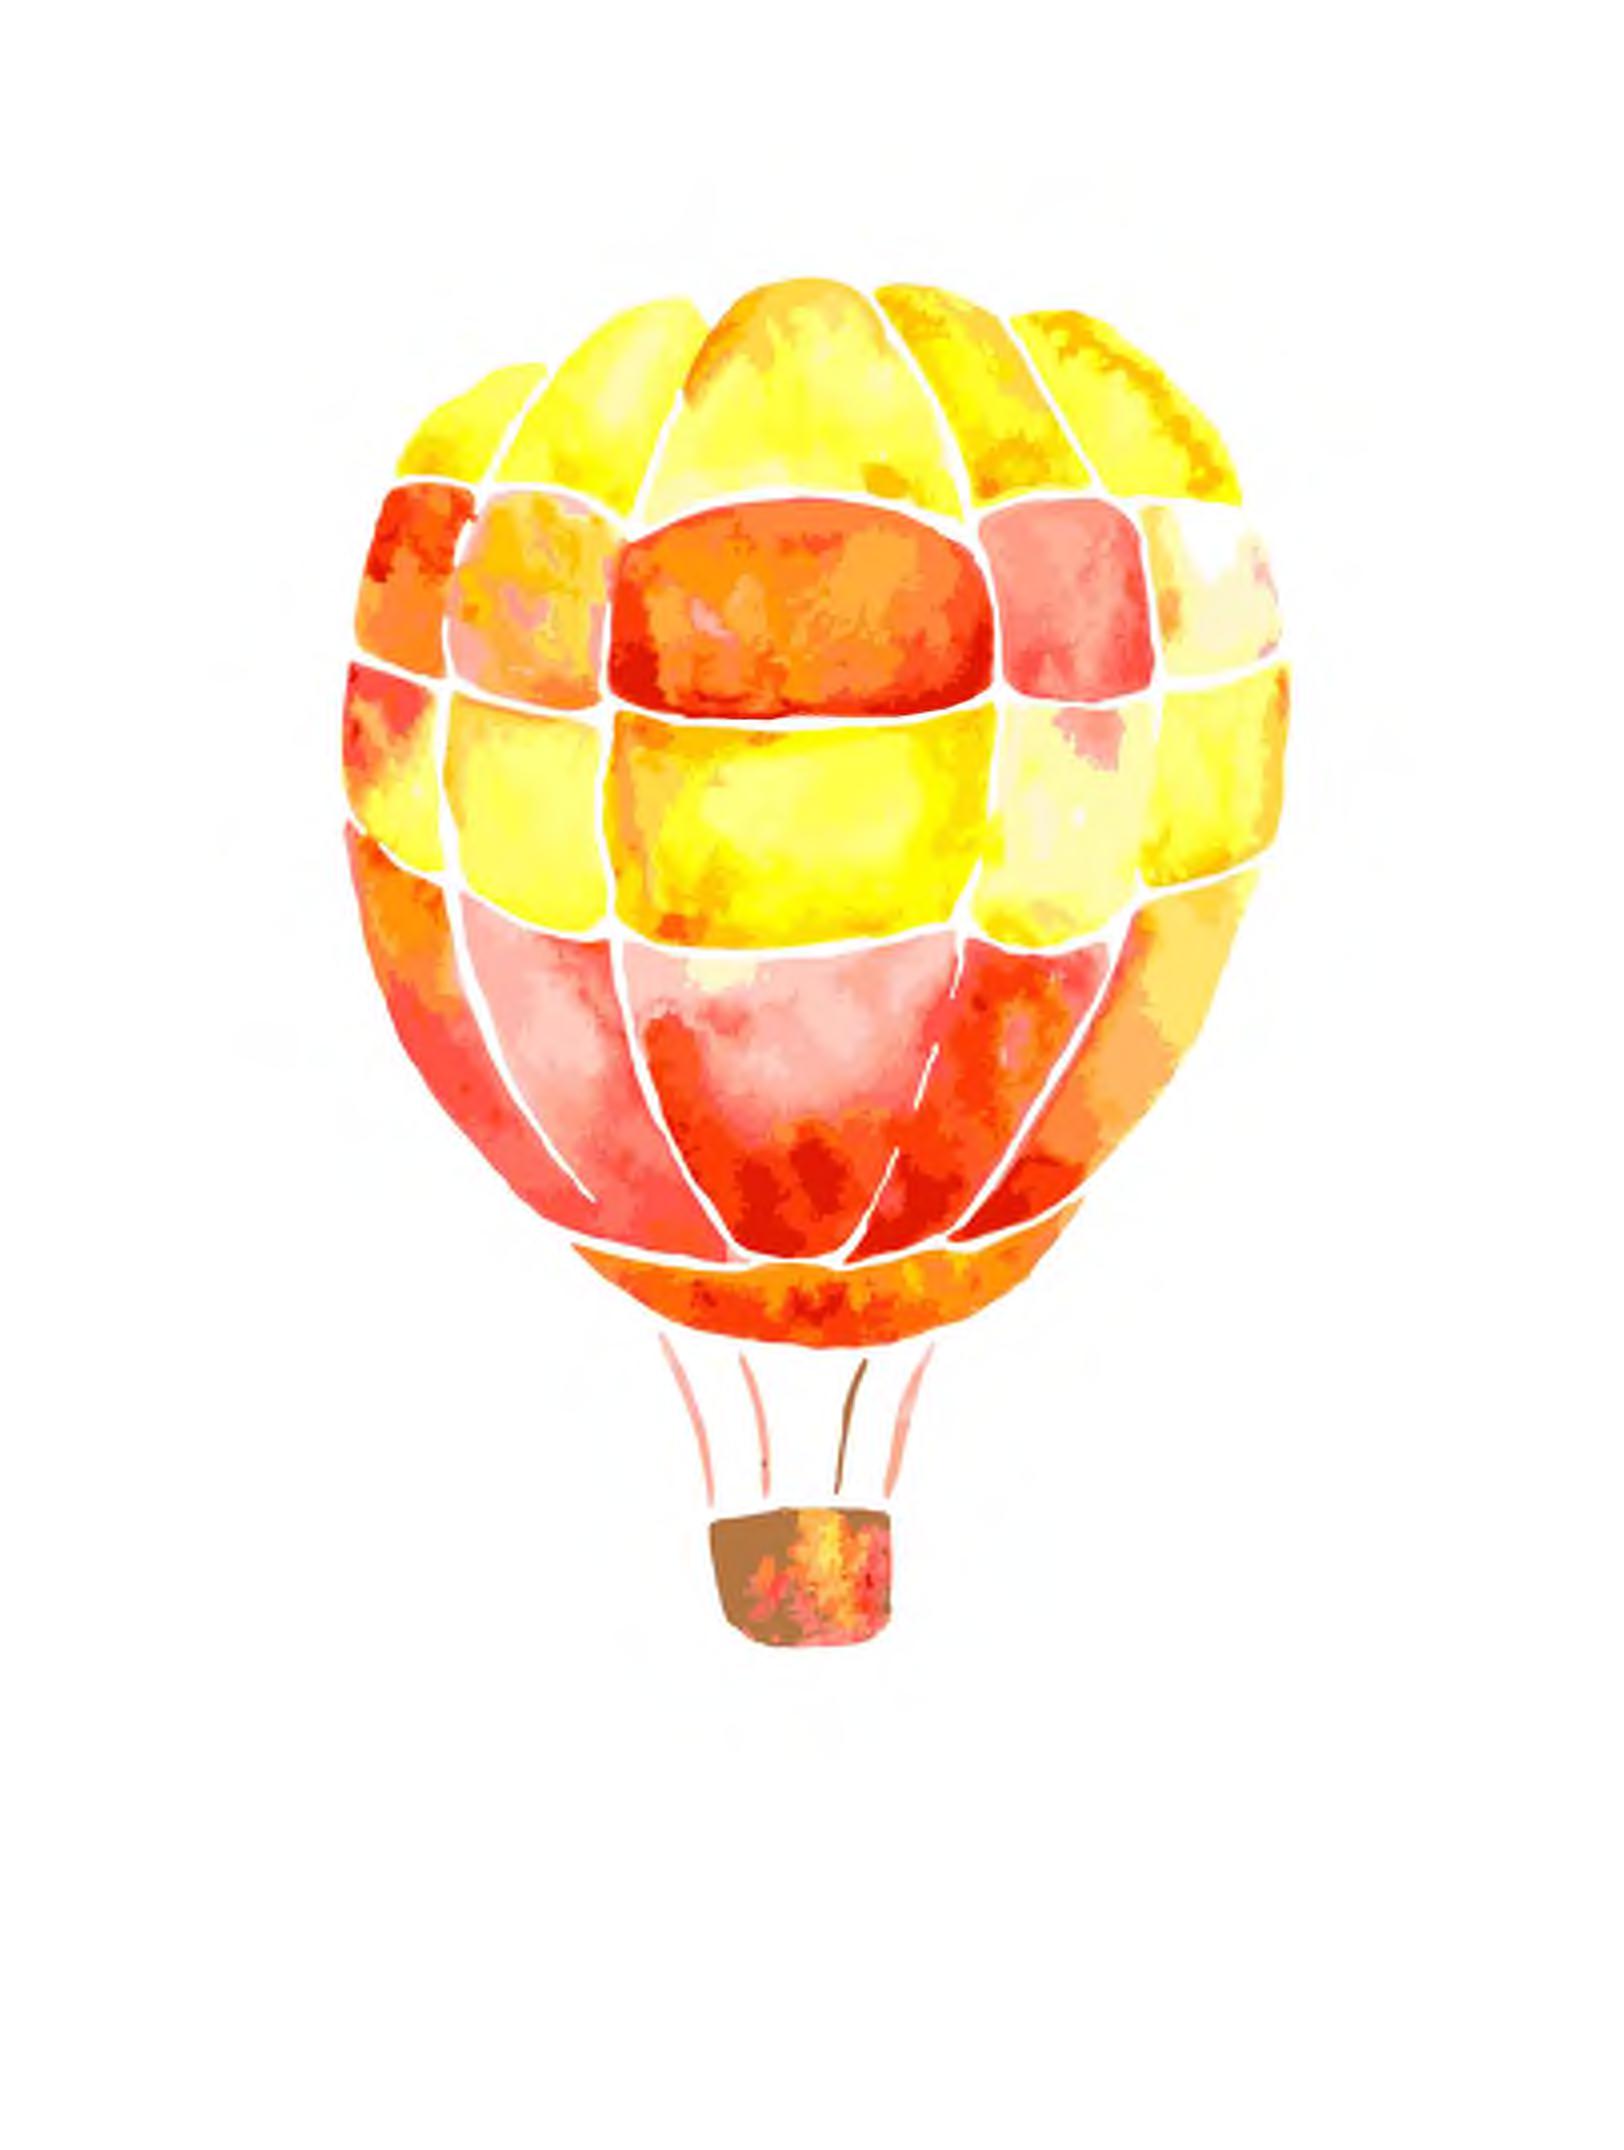 rot-gelber Ballon